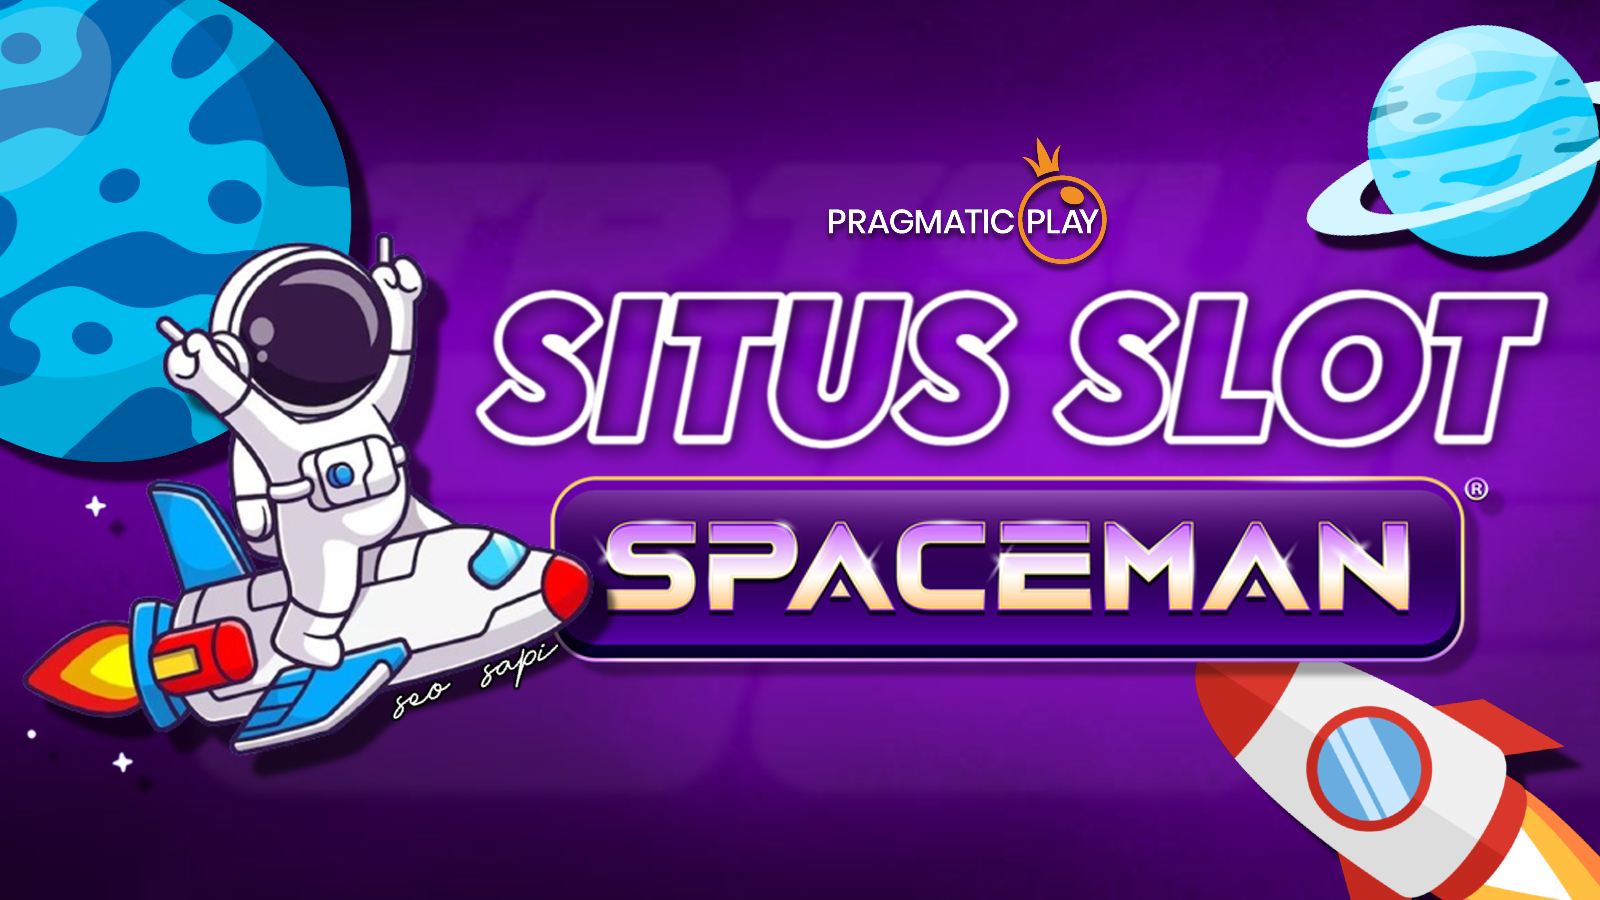 SPACEMAN > Situs Slot Spaceman Pragmatic Play Deposit 10 Ribu Mudah Jackpot 2024